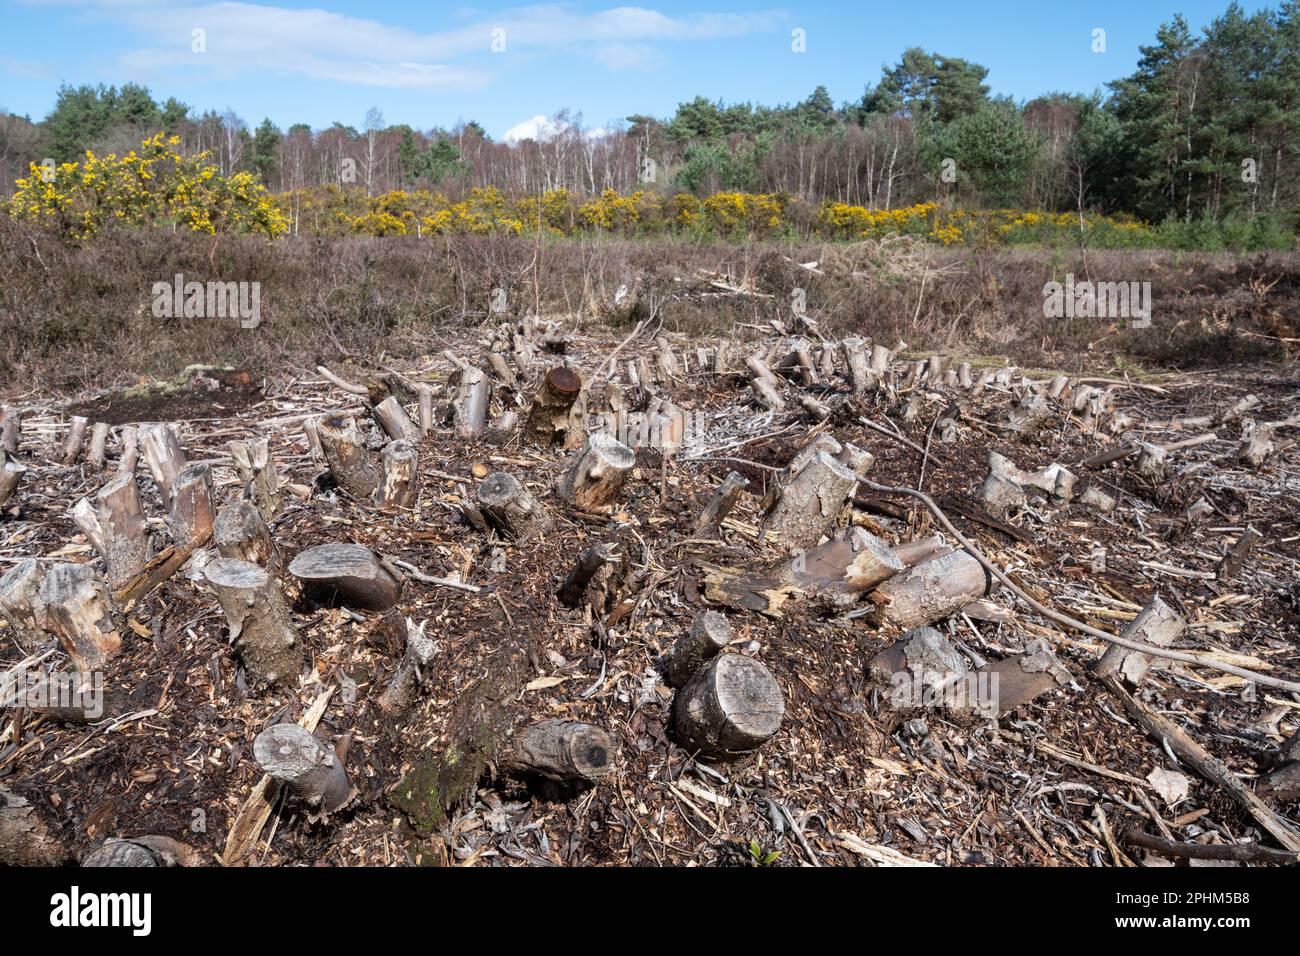 Souches de plantes de rhododendron après avoir défrichement des buissons non indigènes envahissantes de l'habitat de la lande, Hampshire, Angleterre, Royaume-Uni. Gestion de campagne Banque D'Images